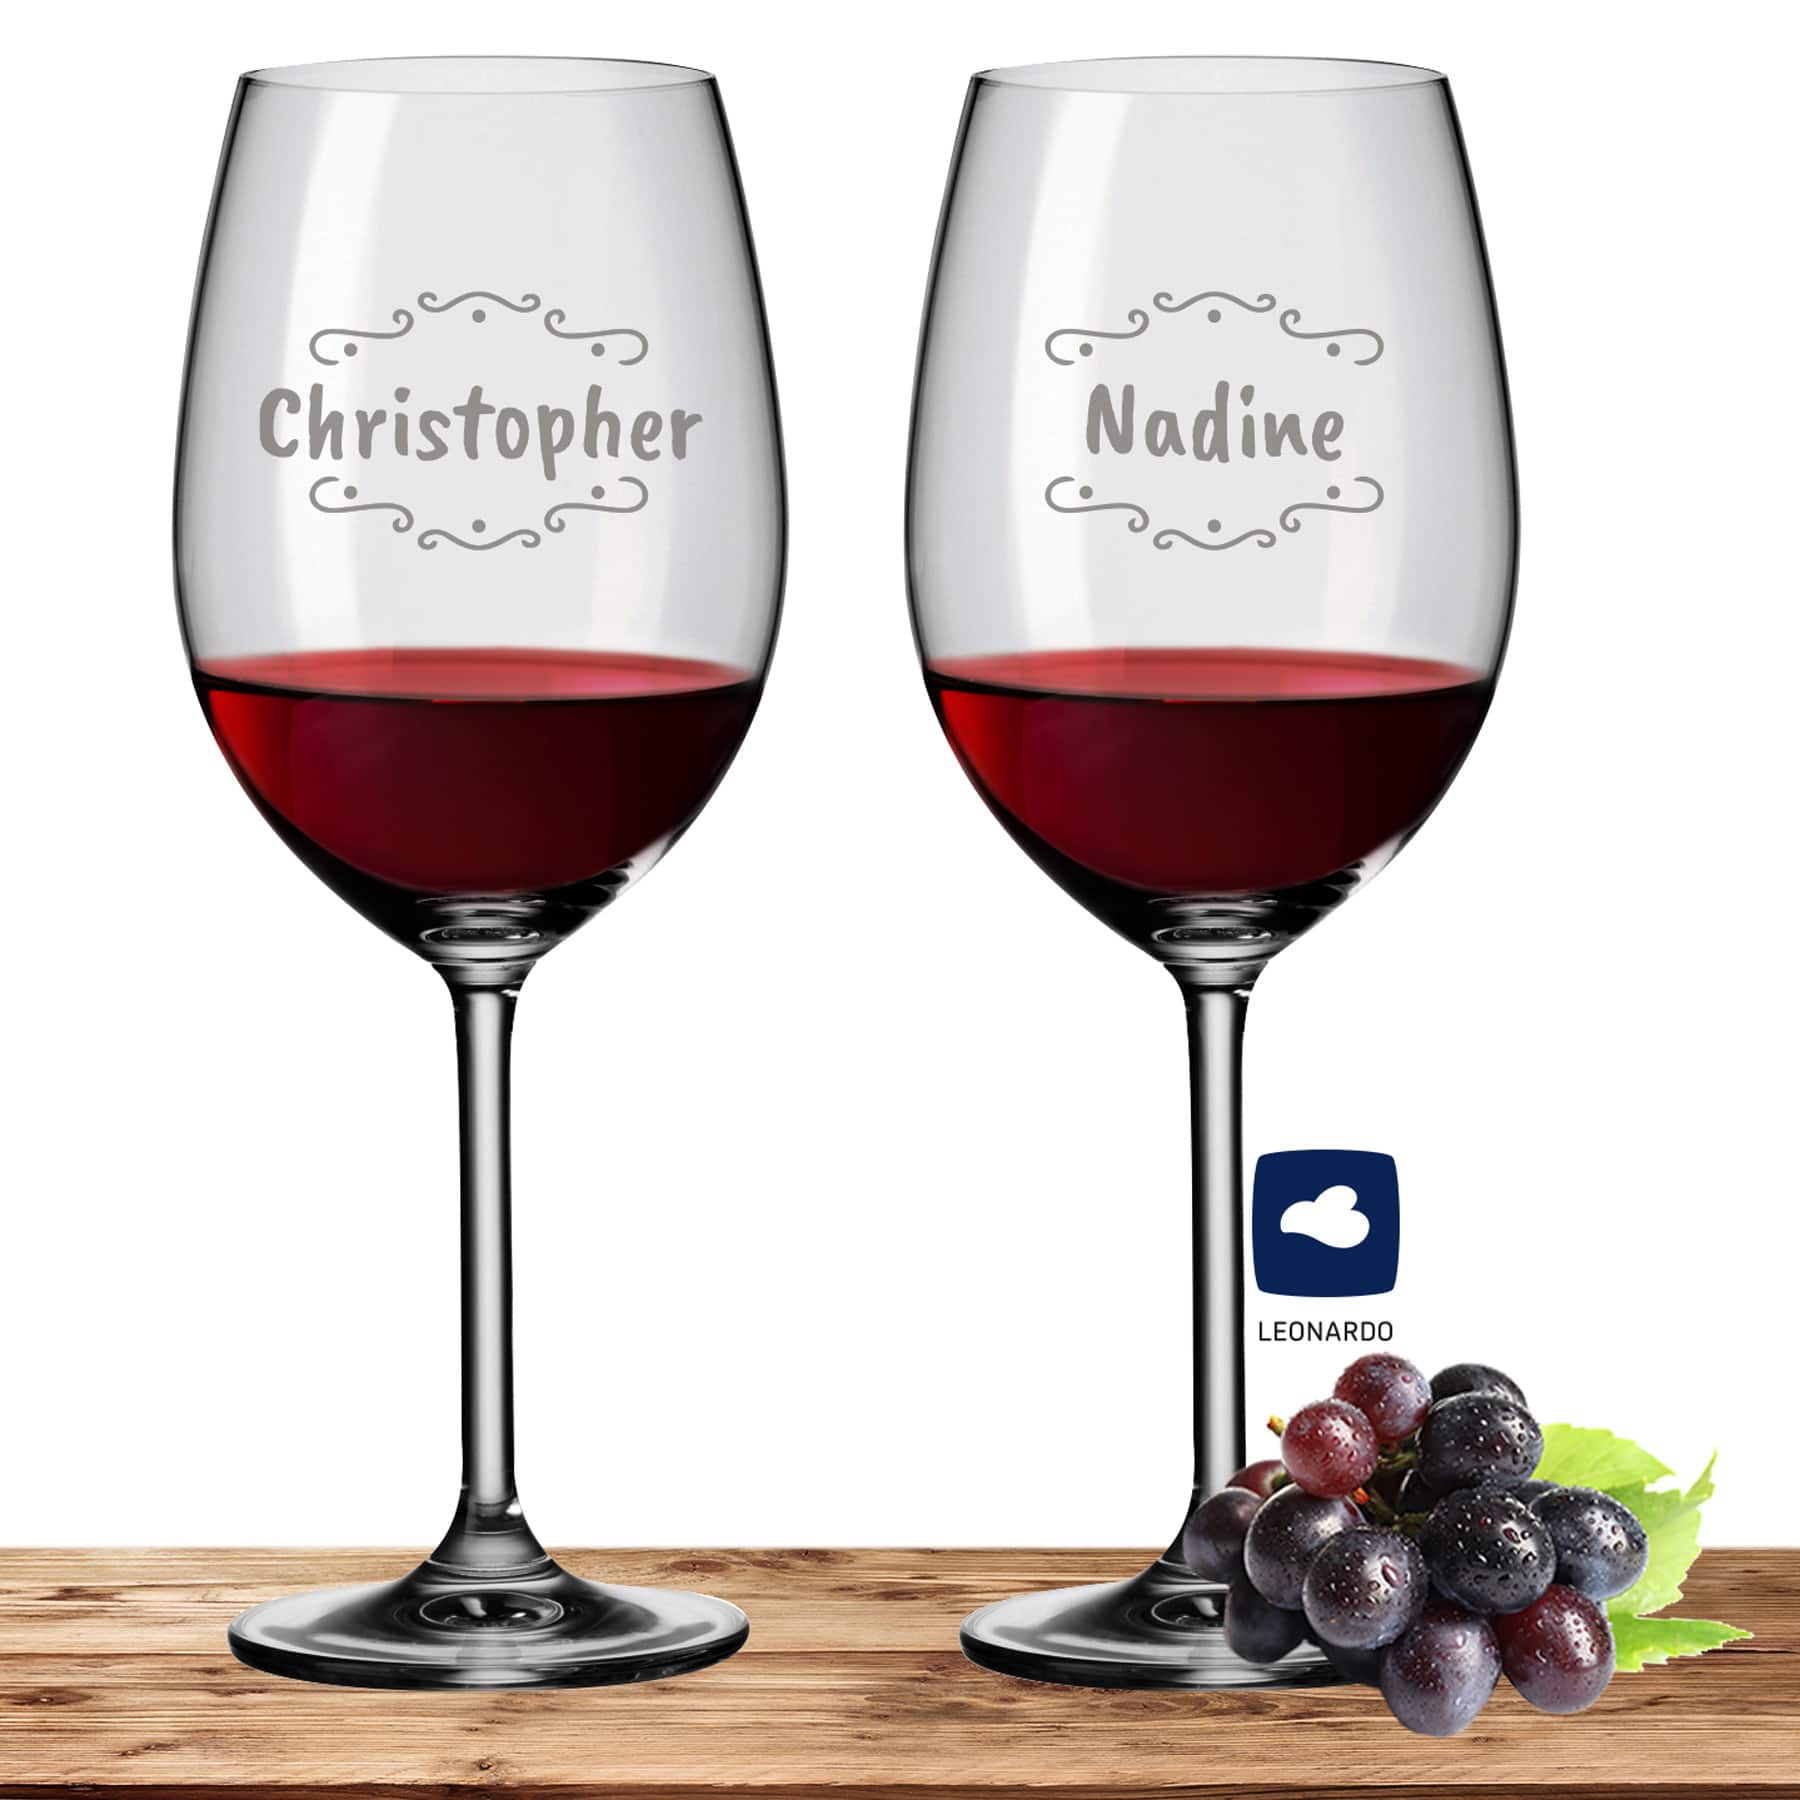 2x Leonardo Bordeauxglas Rotweinglas XL mit Namen oder Wunschtext graviert, 640ml, DAILY, personalisiertes Premium Bordeauxglas in Gastroqualität (Verzierung 02)